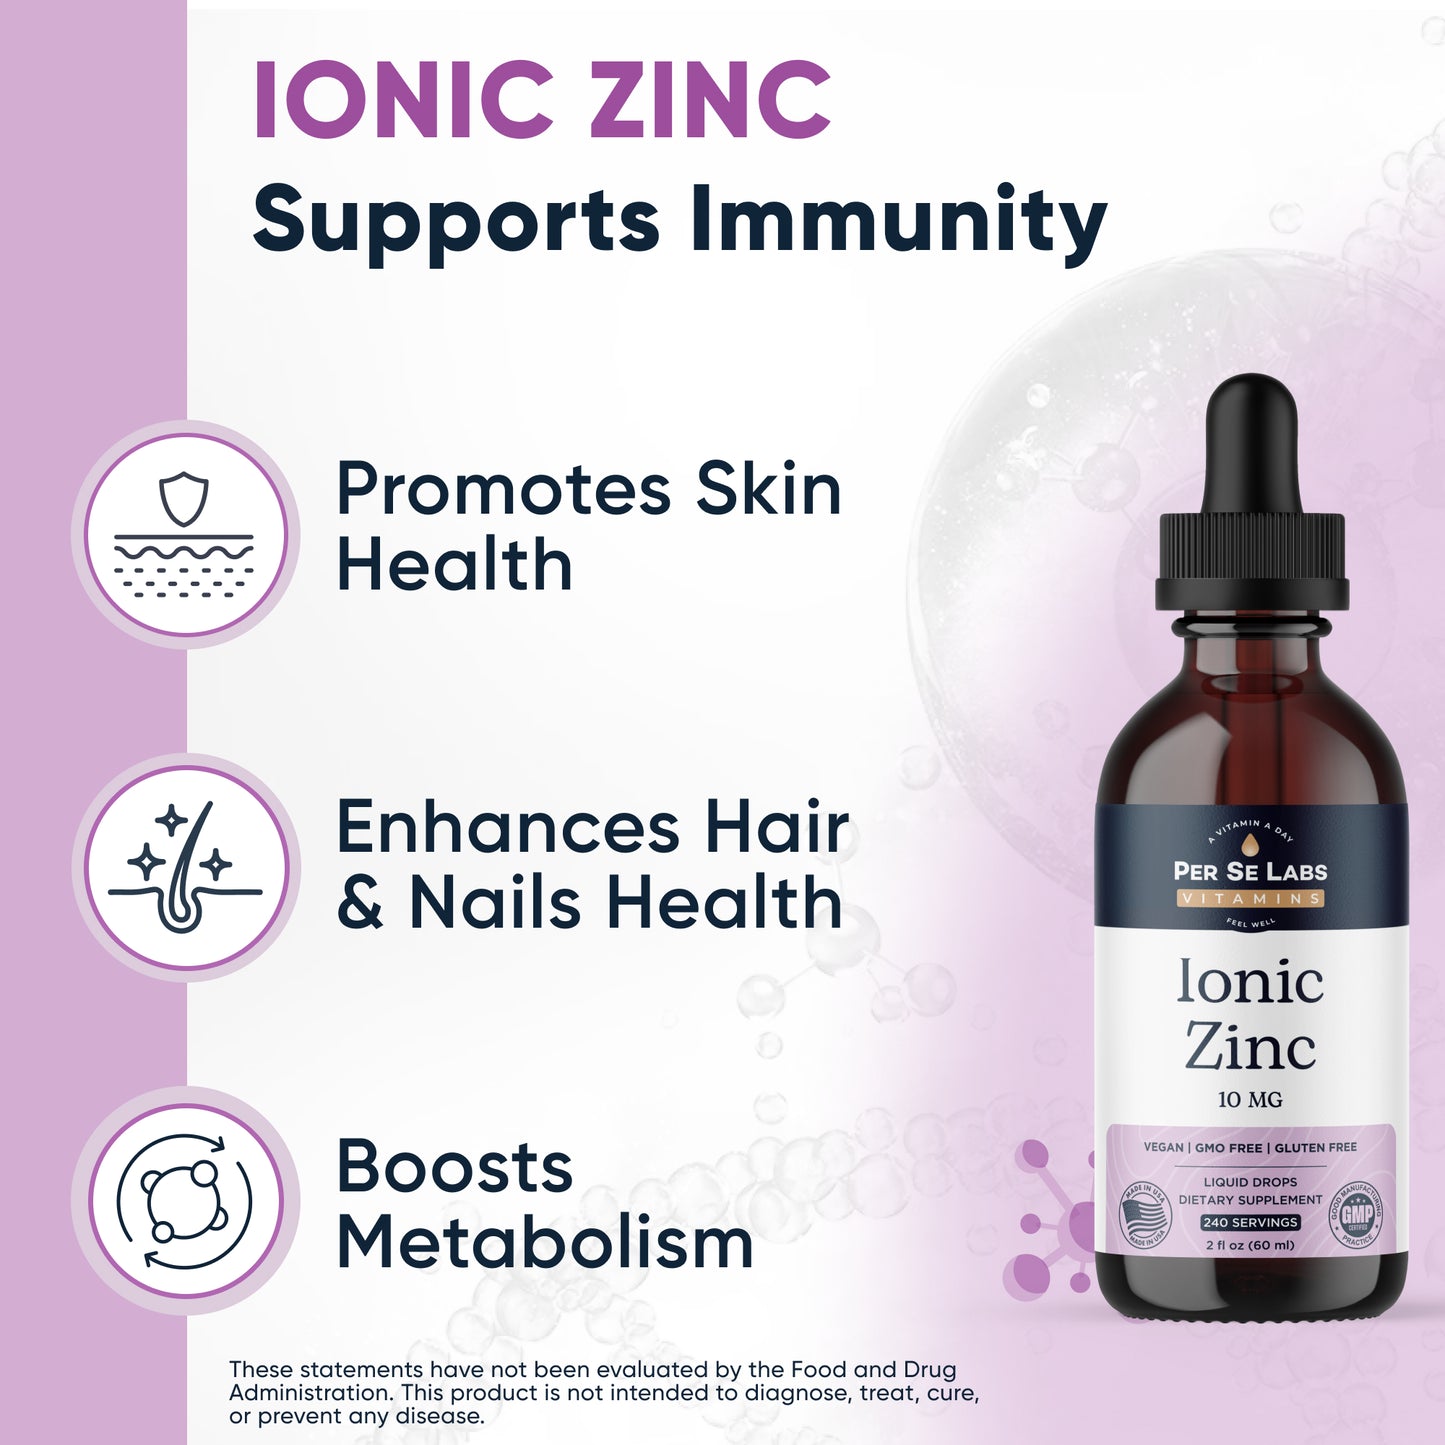 Ionic Zinc Vegan Liquid  (240 servings)